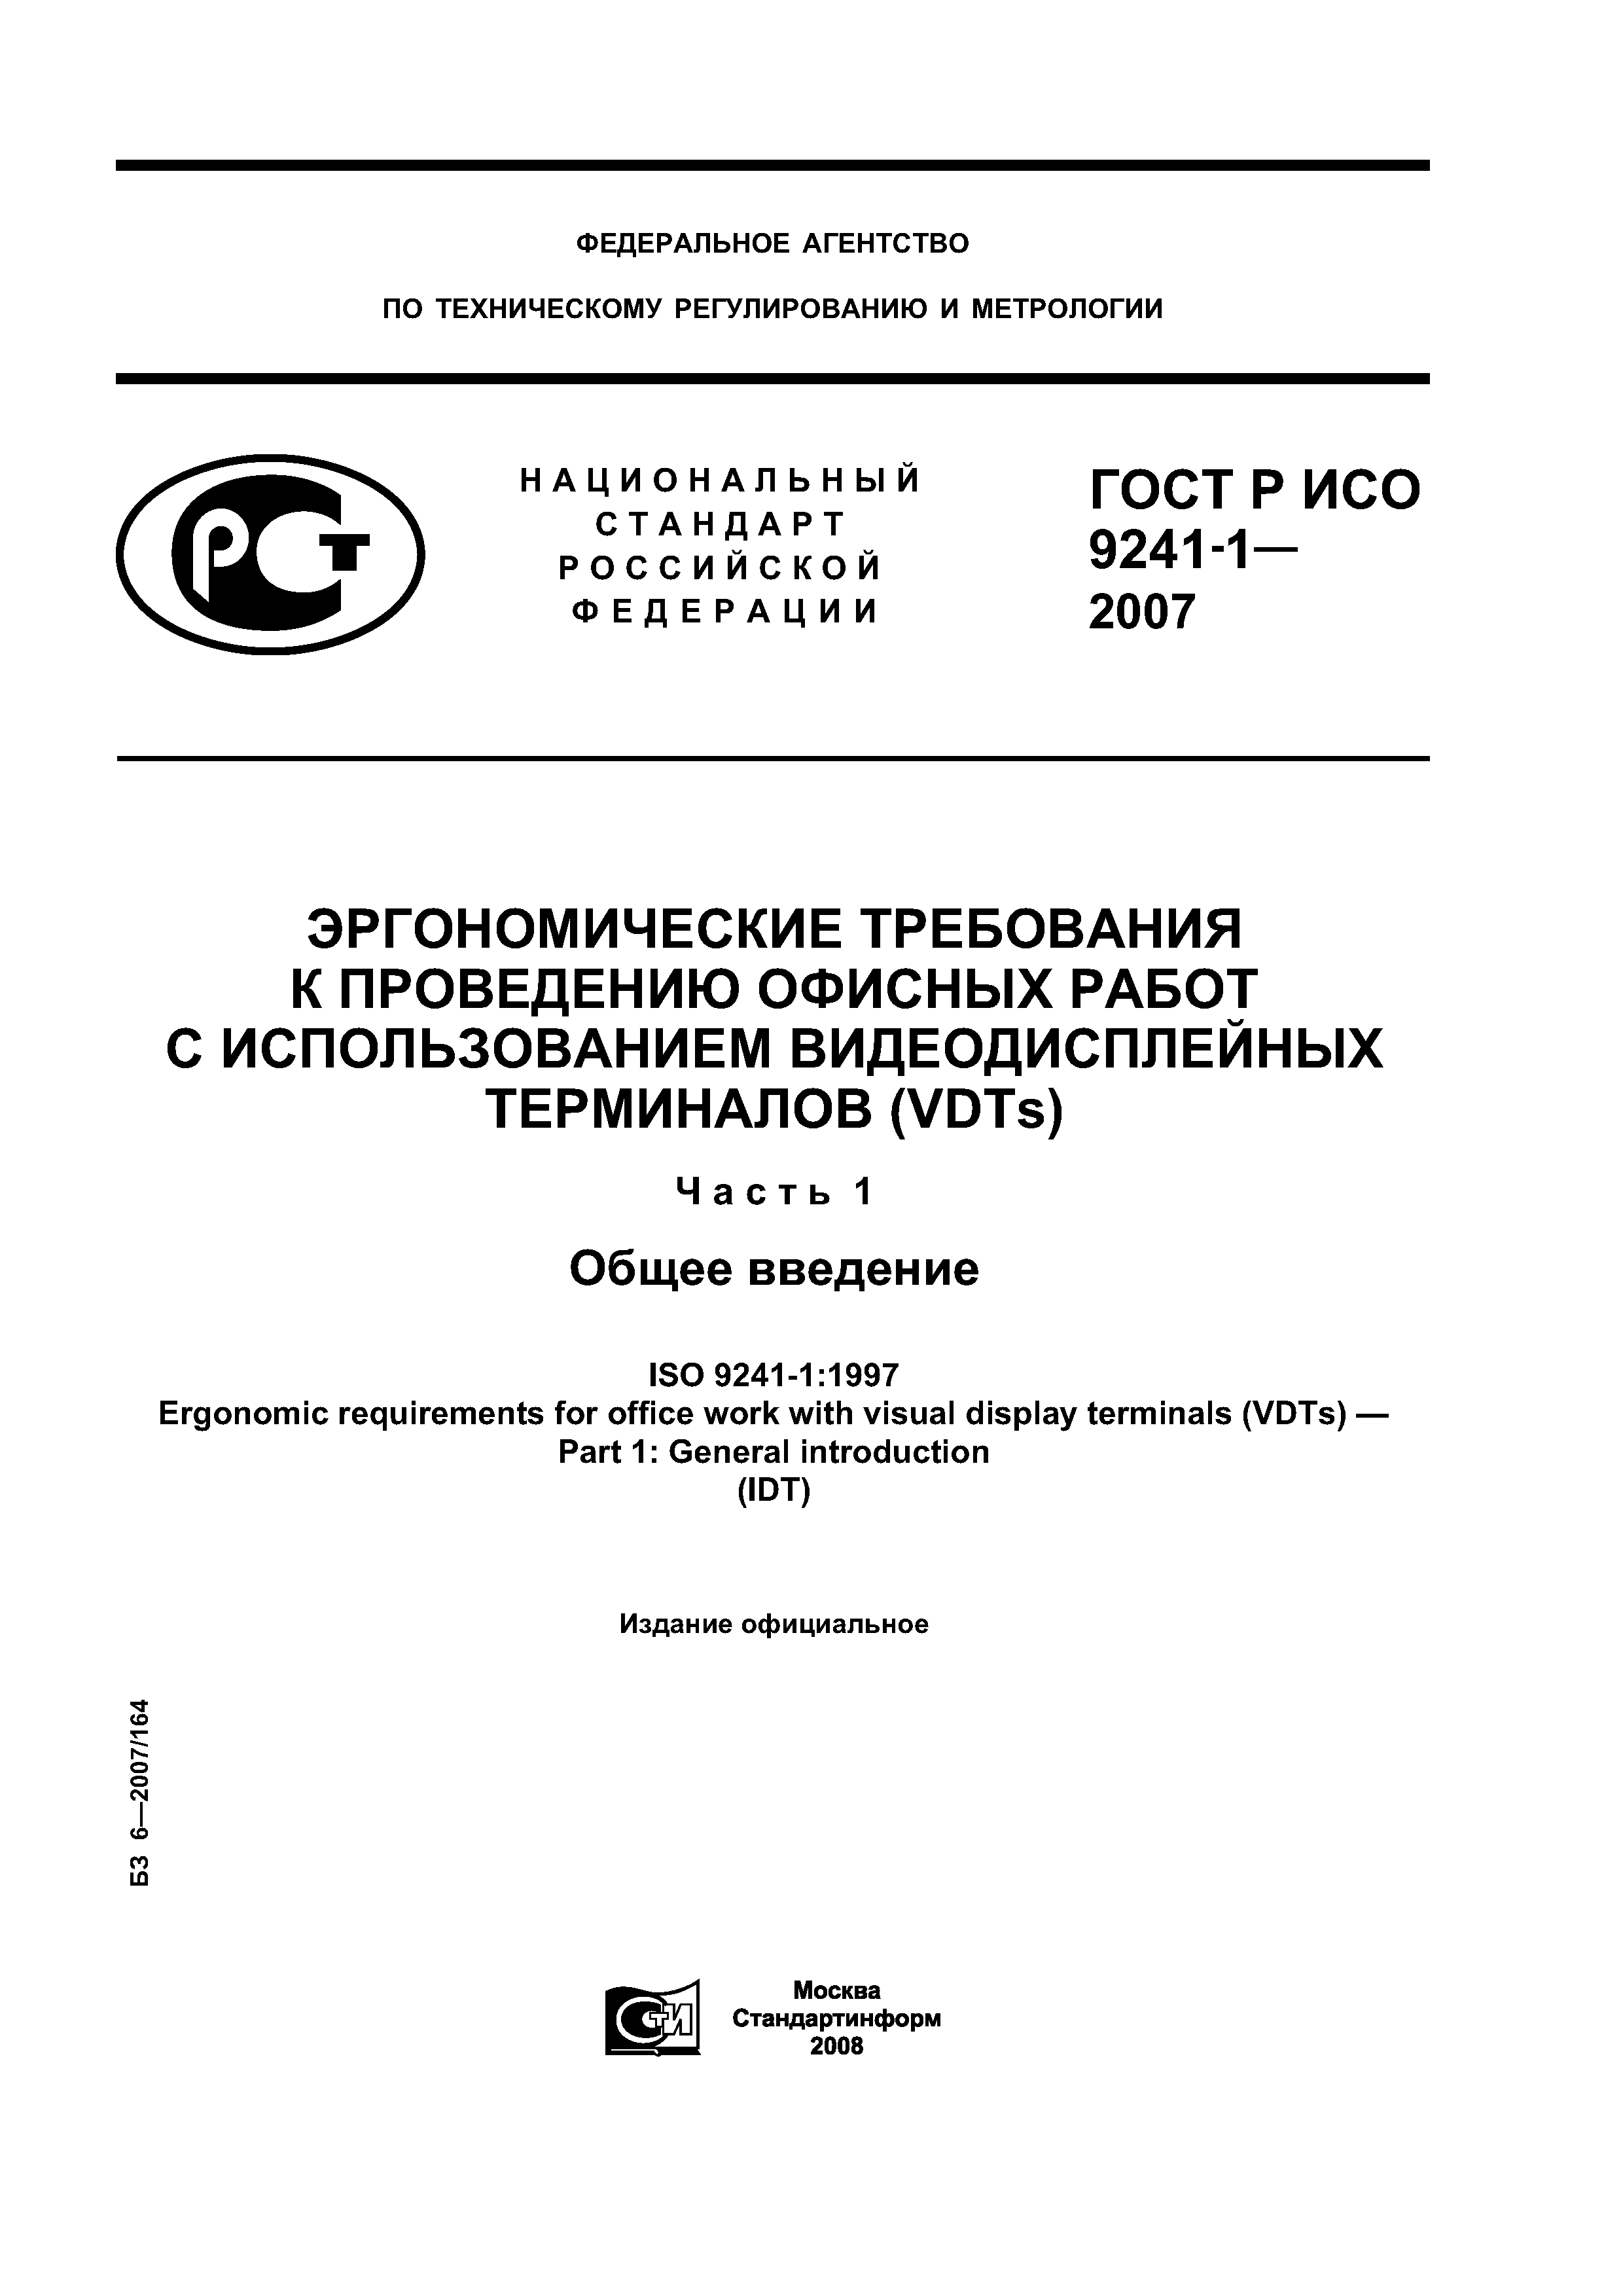 ГОСТ Р ИСО 9241-1-2007